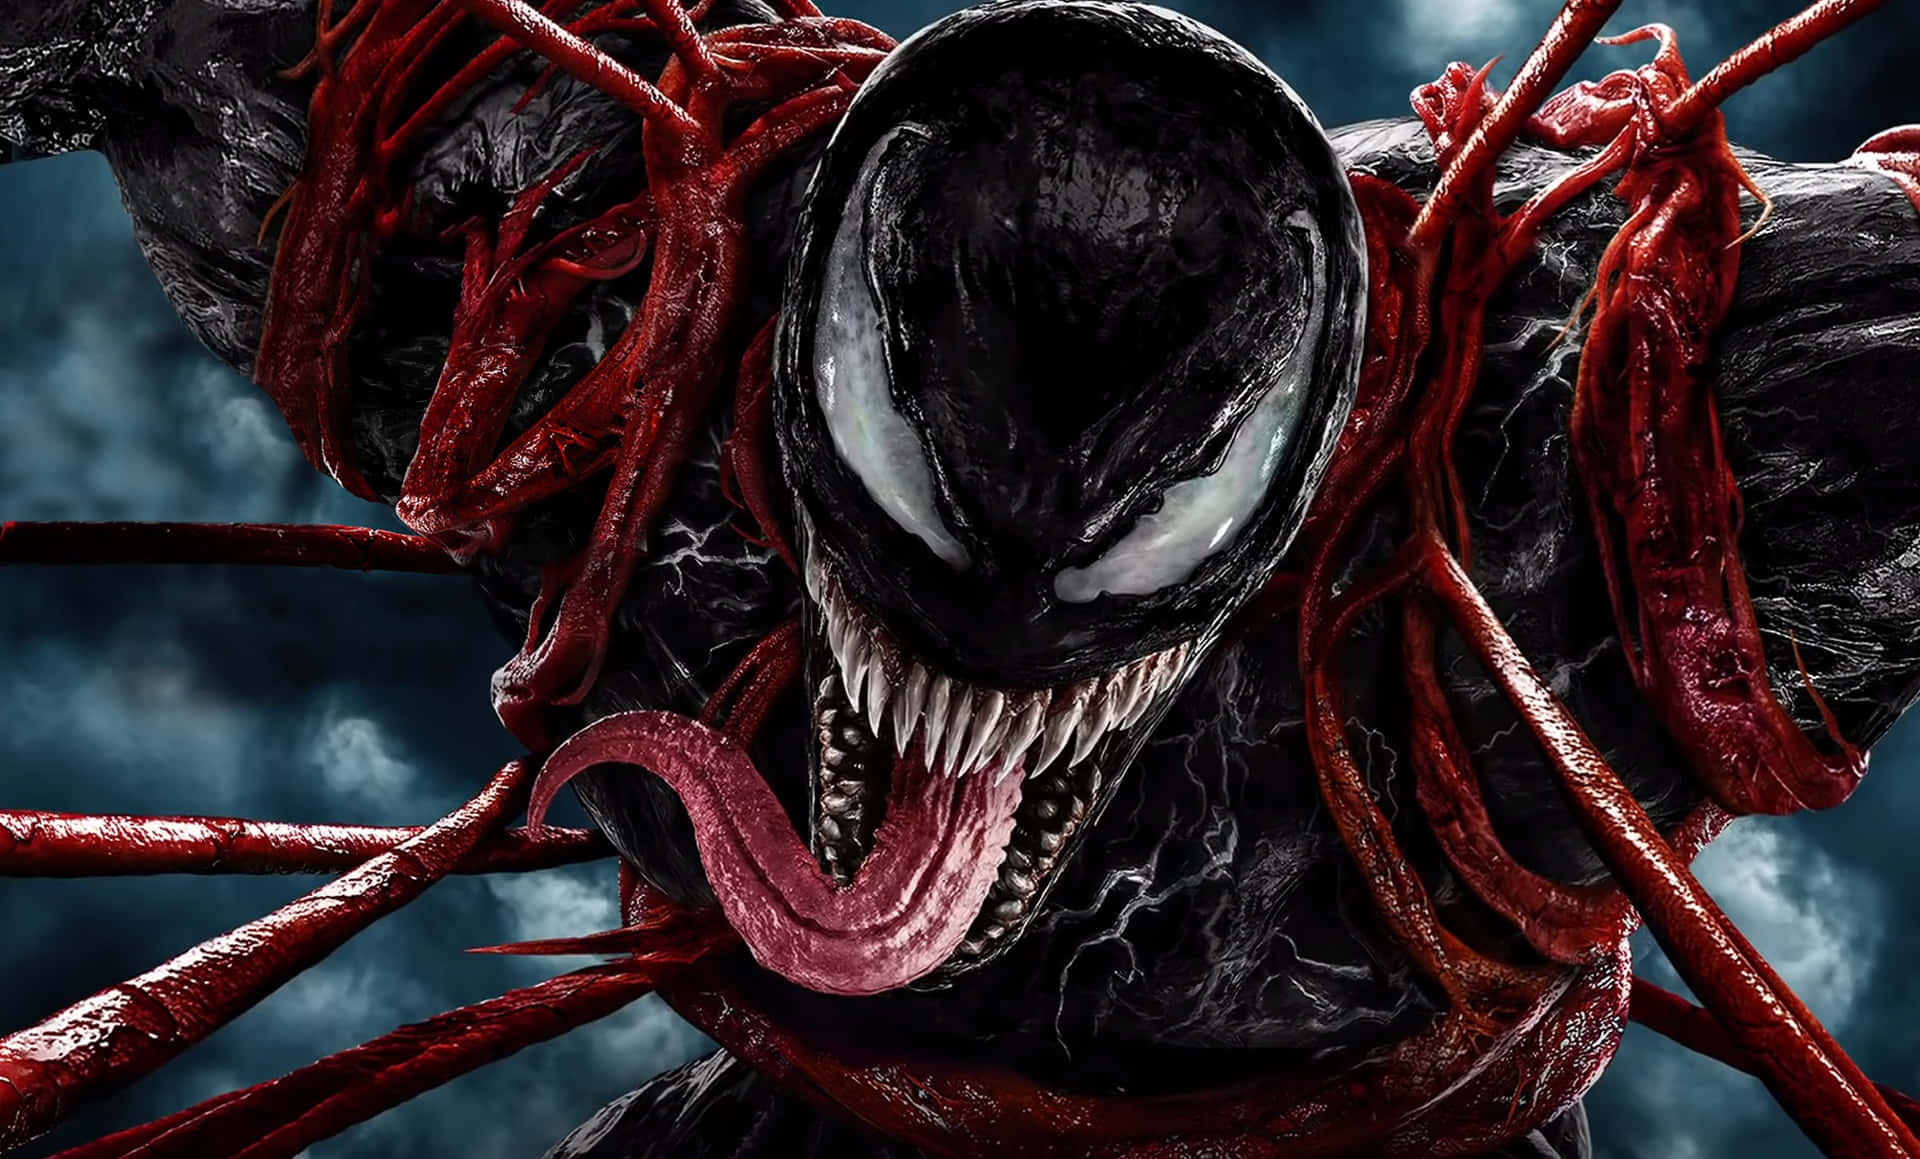 Derfurchterregende Anti-held Venom